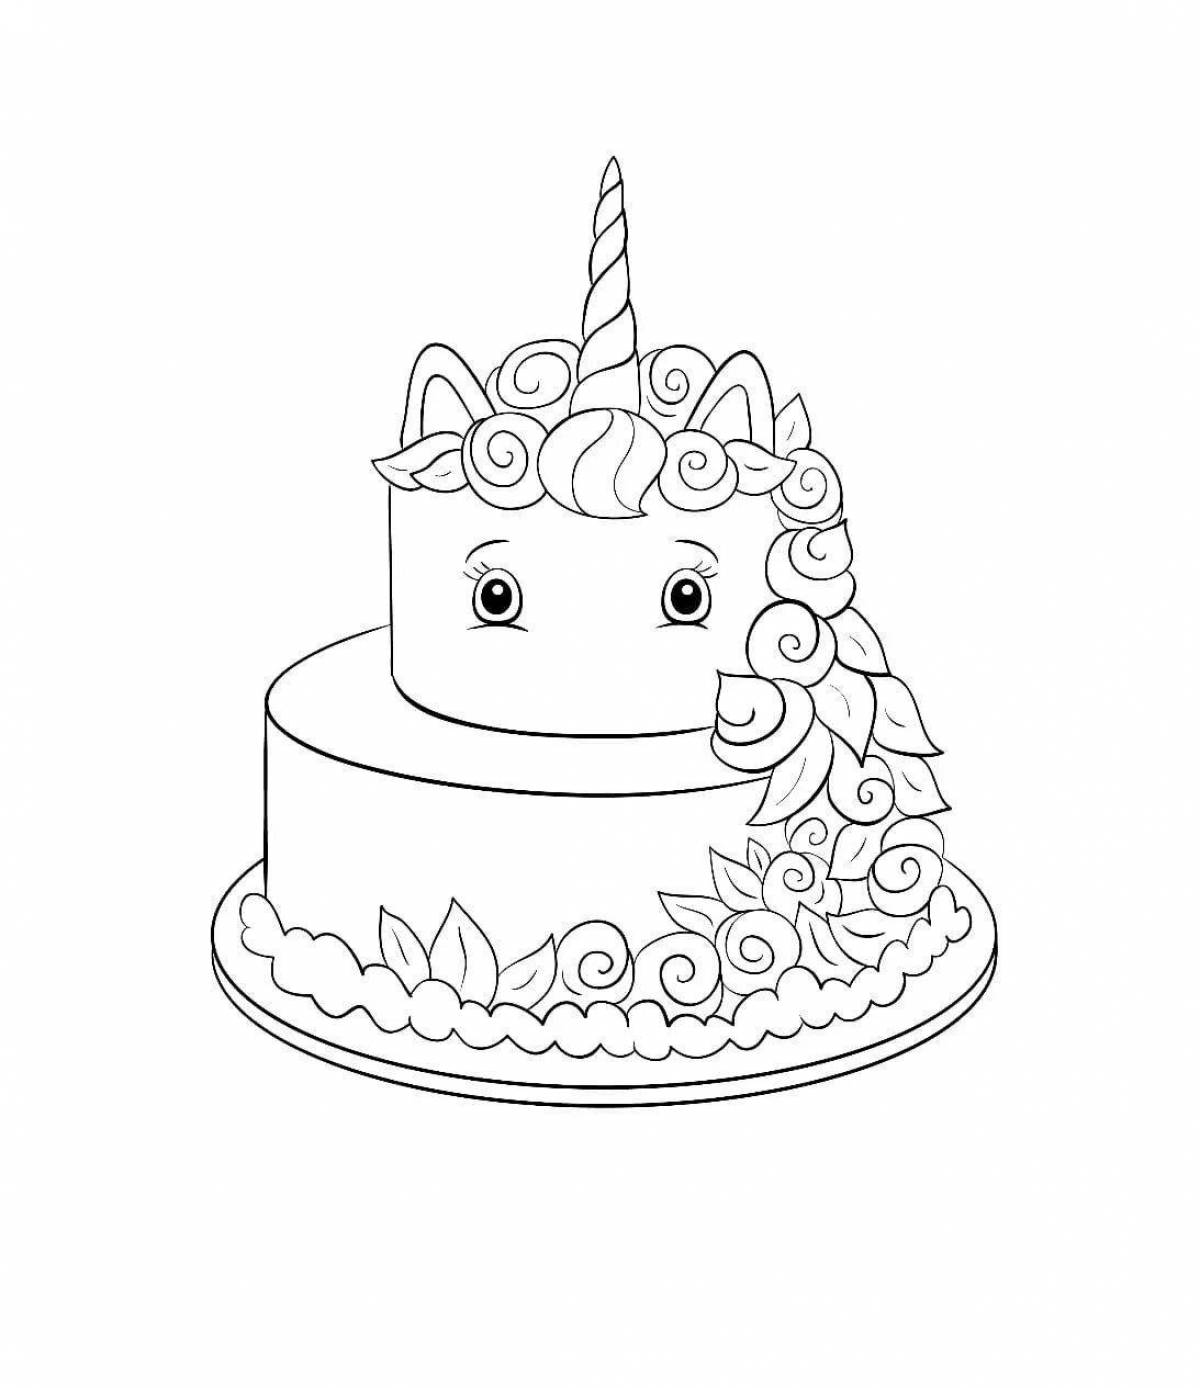 Dreamy unicorn cake coloring book